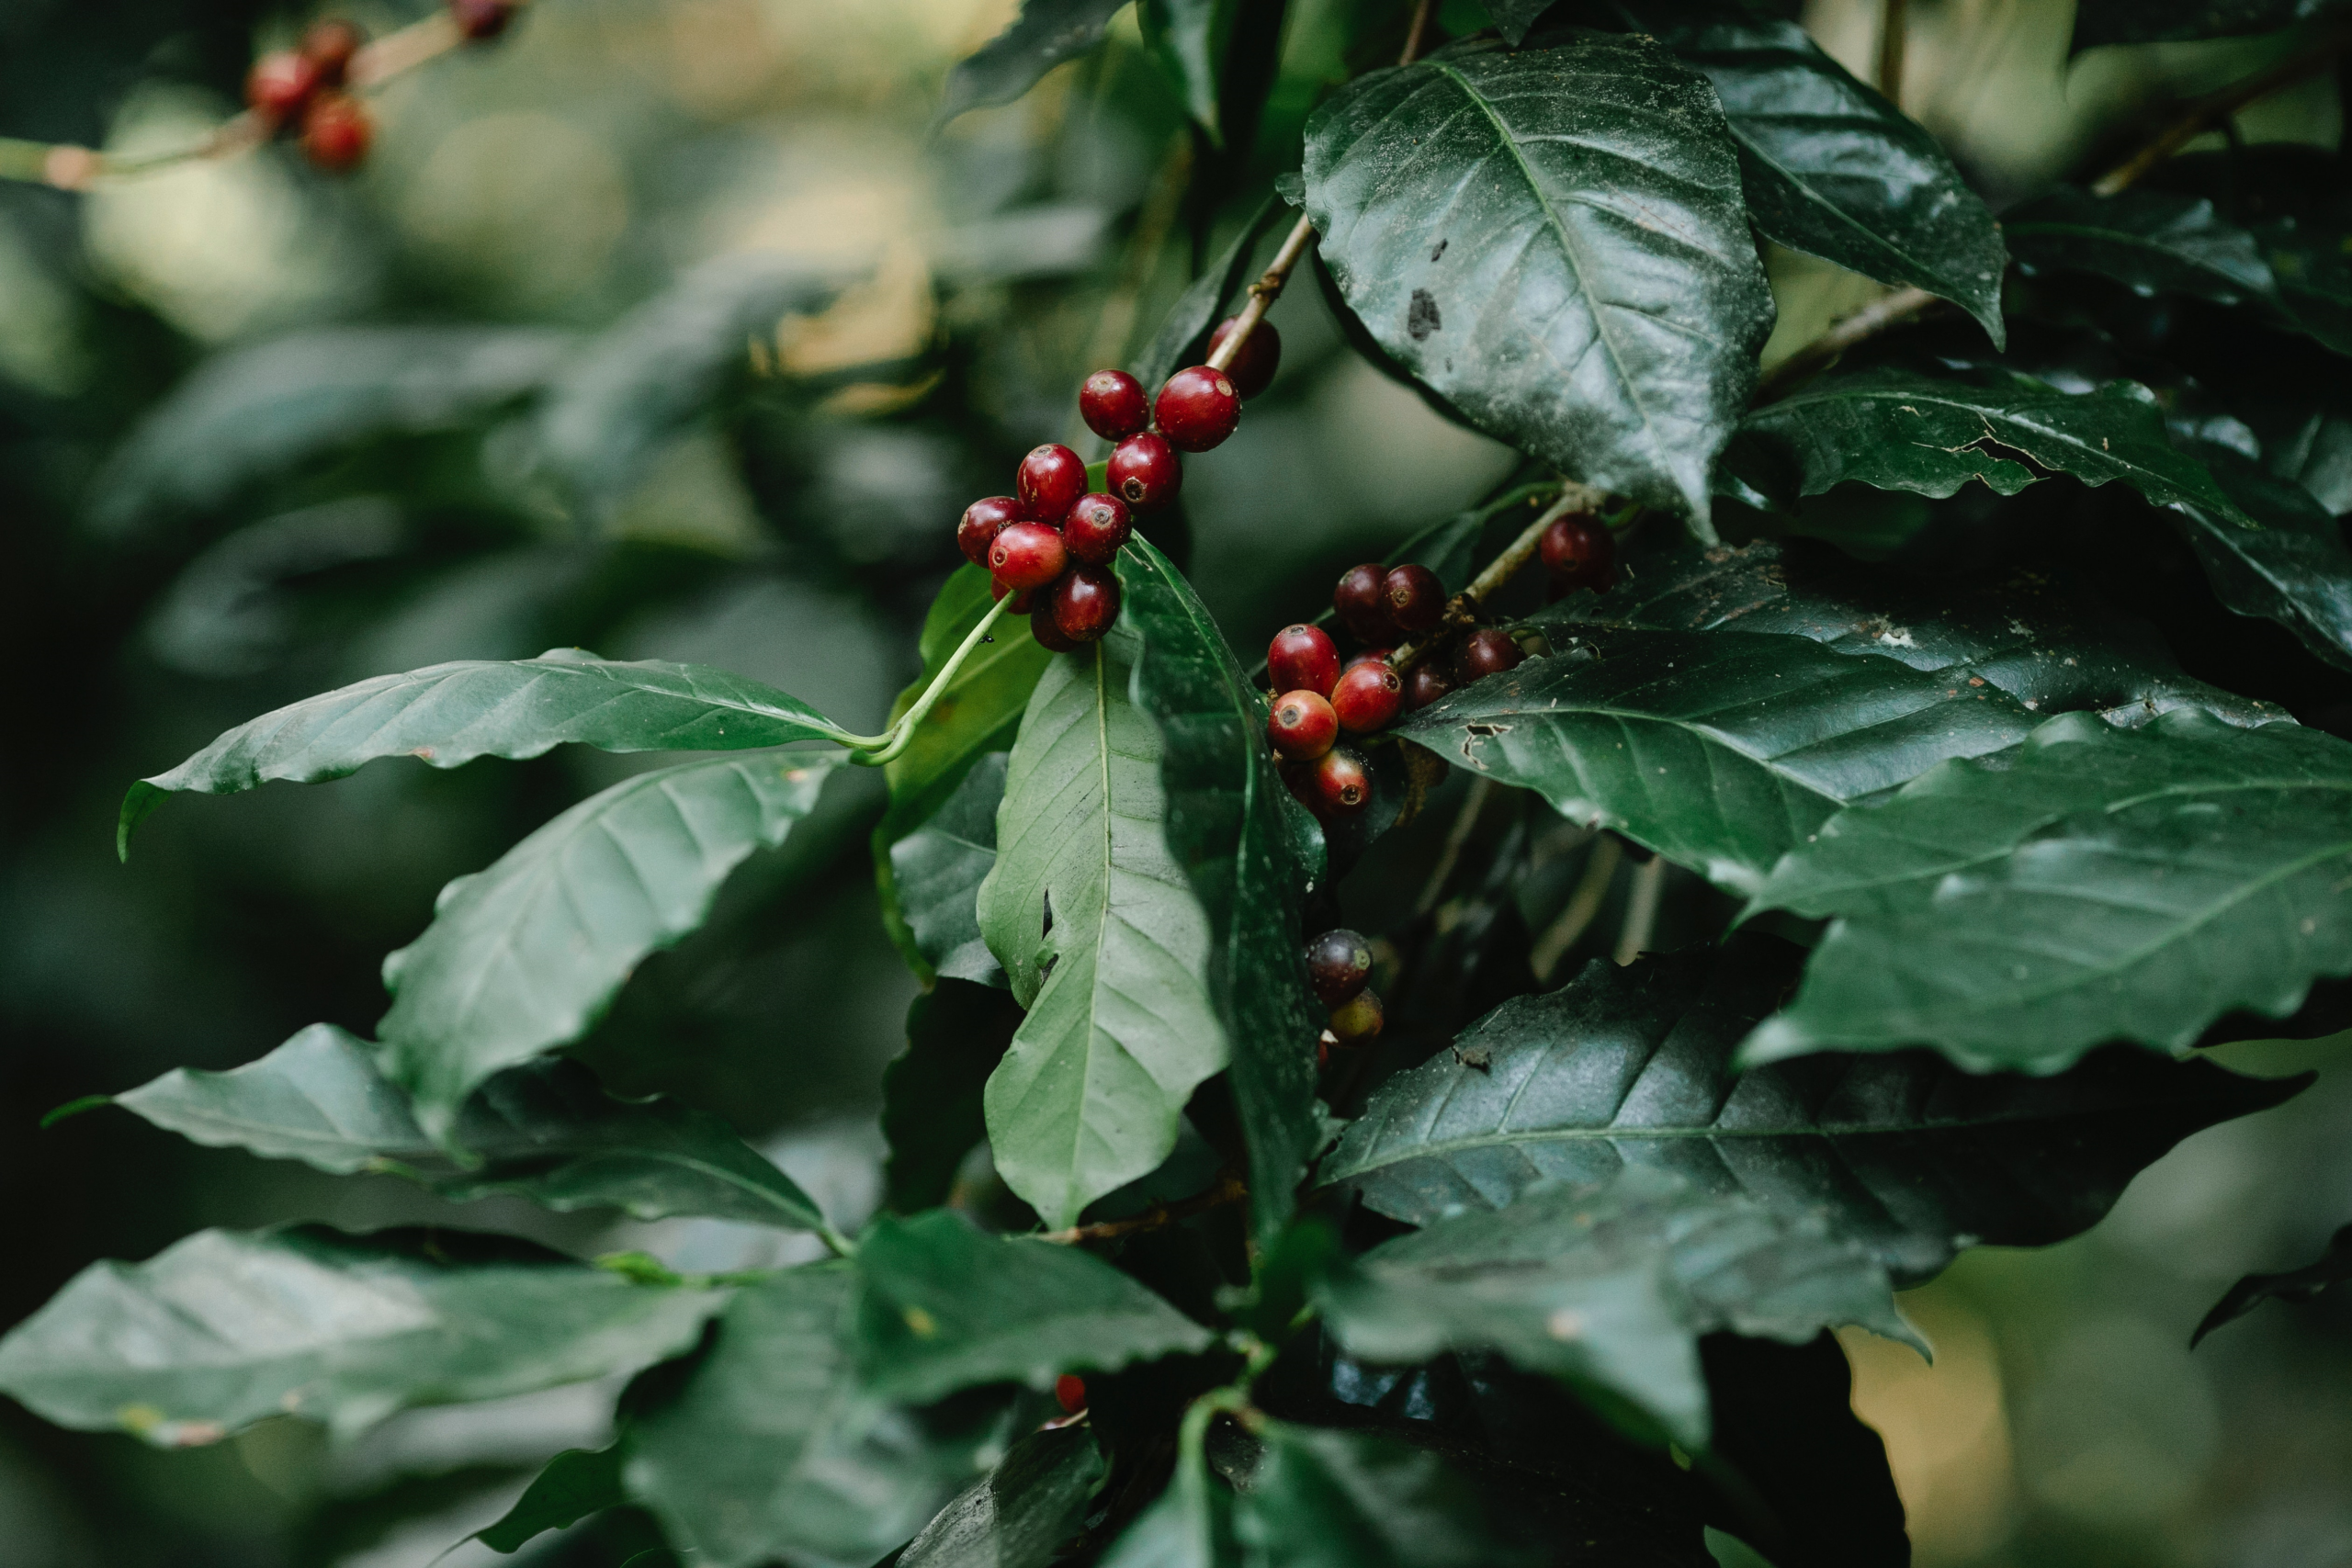 Experter har utfärdat en brådskande vädjan till regeringen och jordbrukssamhället i Uganda att anta mer hållbara metoder för kaffeodling och produktion. Uppropet framfördes av chefen för World Sustainability Organization Paolo Bray. Han varnade för att underlåtenhet att agera kan leda till att Uganda förlorar sin position som en av världens största kaffeproducenter.